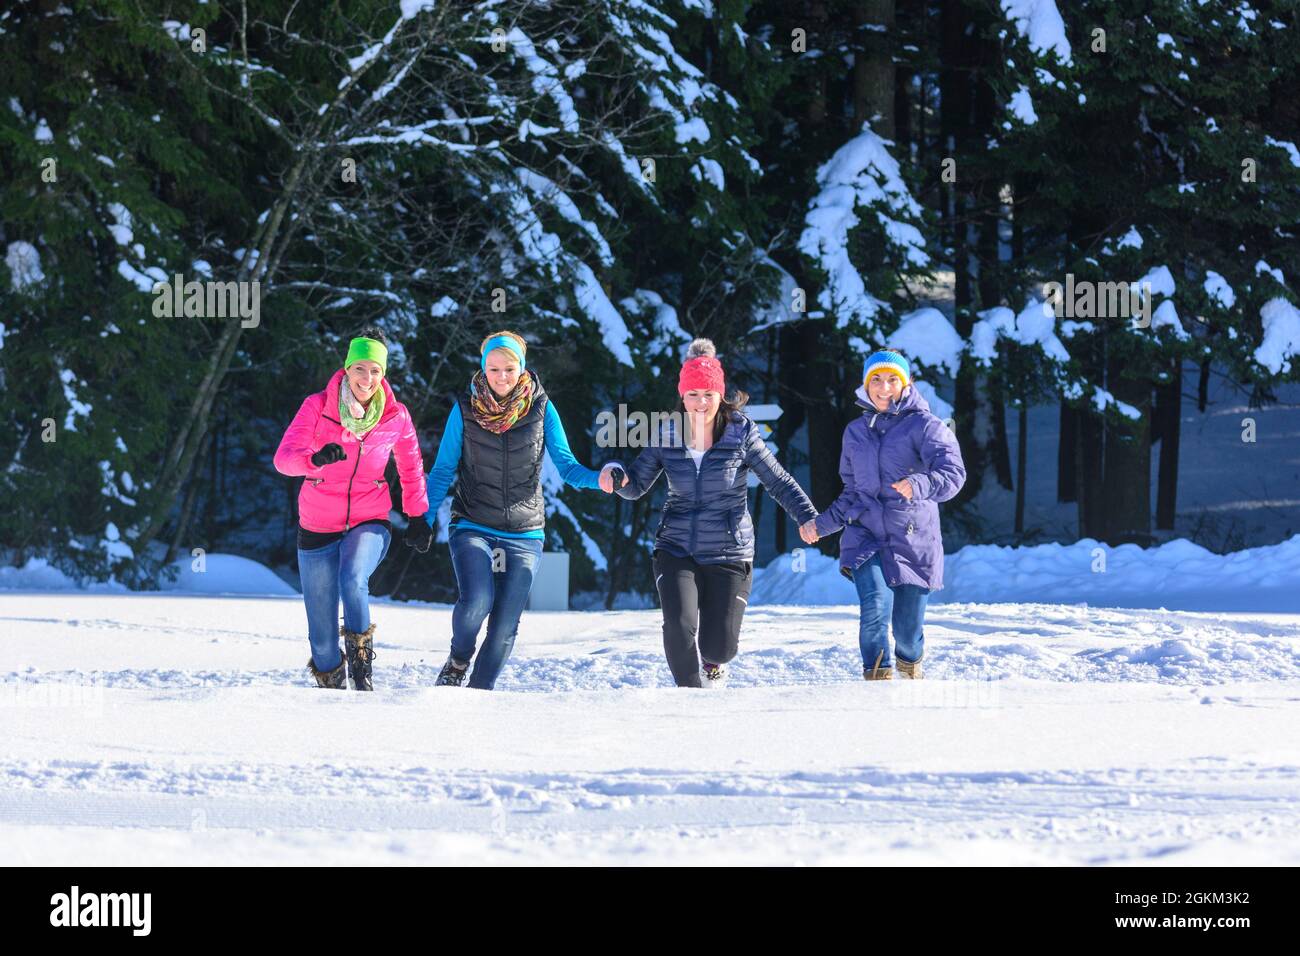 Un pomeriggio con le amiche nella neve, passeggiata invernale in una giornata invernale soleggiata e fredda Foto Stock